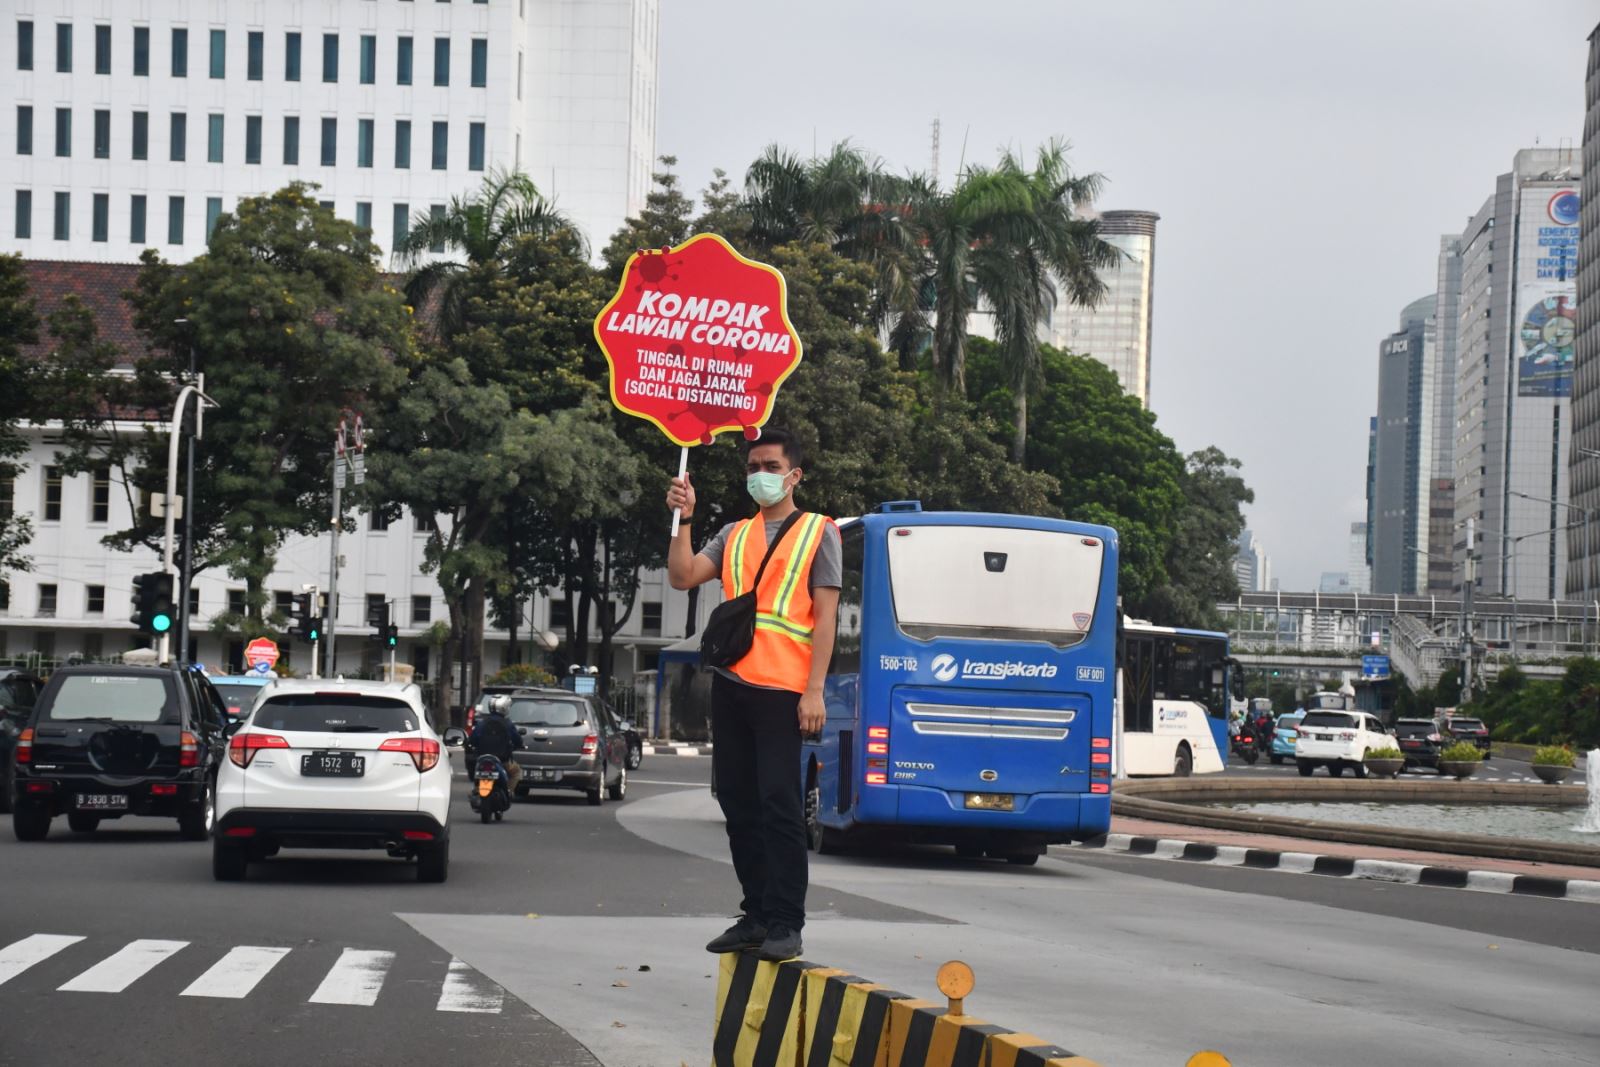 Hơn 17.000 người dân đã đăng ký tình nguyện viên chống Covid-19 làm nhiệm vụ y tế, tuyên truyền và hậu cần, nhiều nhất ở thủ đô Jakarta. (Ảnh: Hương Trà / VOV Jakarta).